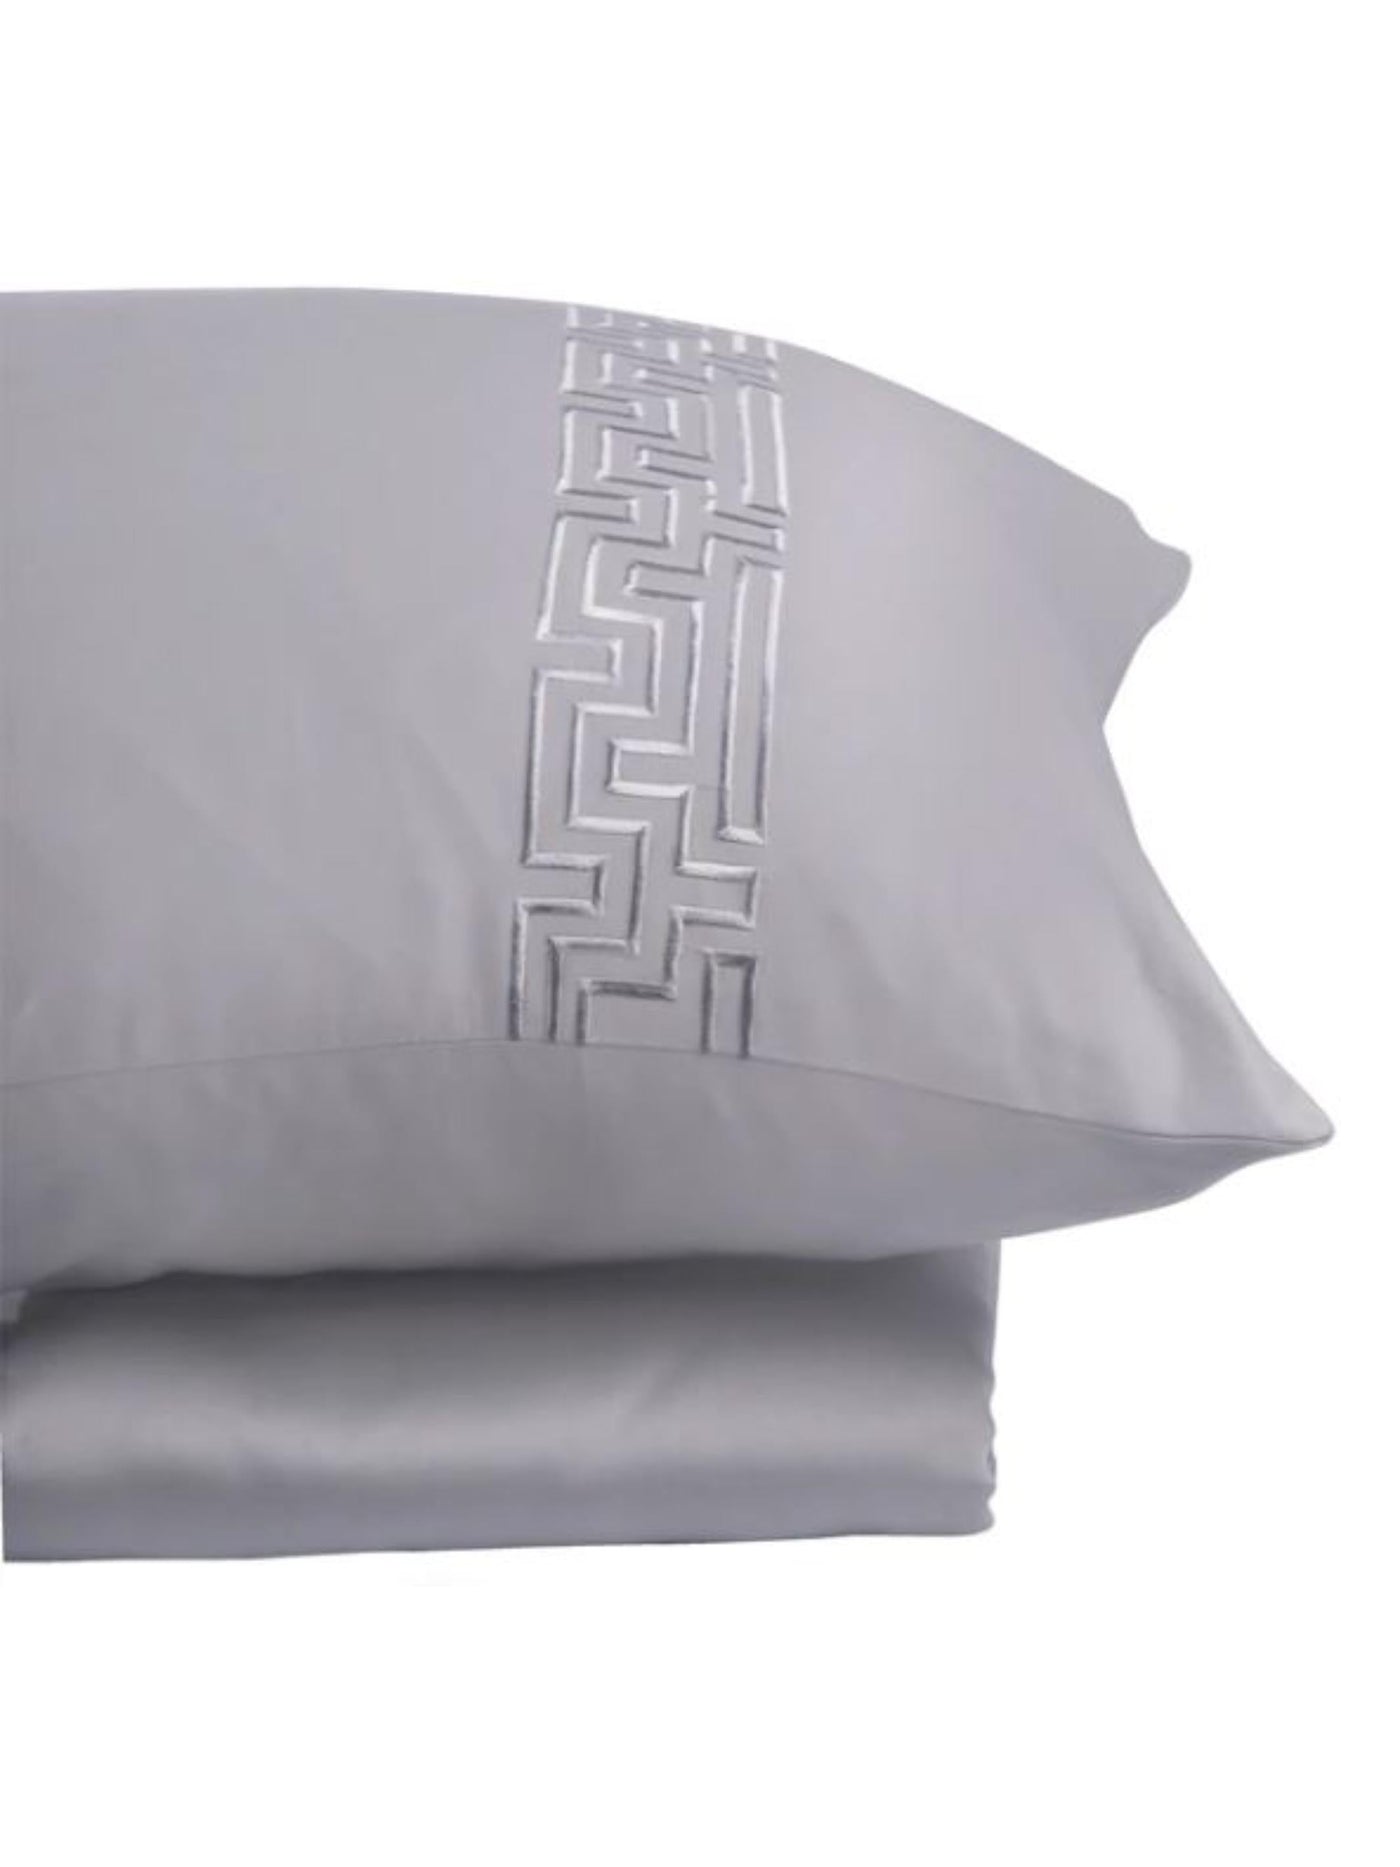 100% Cotton Bedsheet - Maze